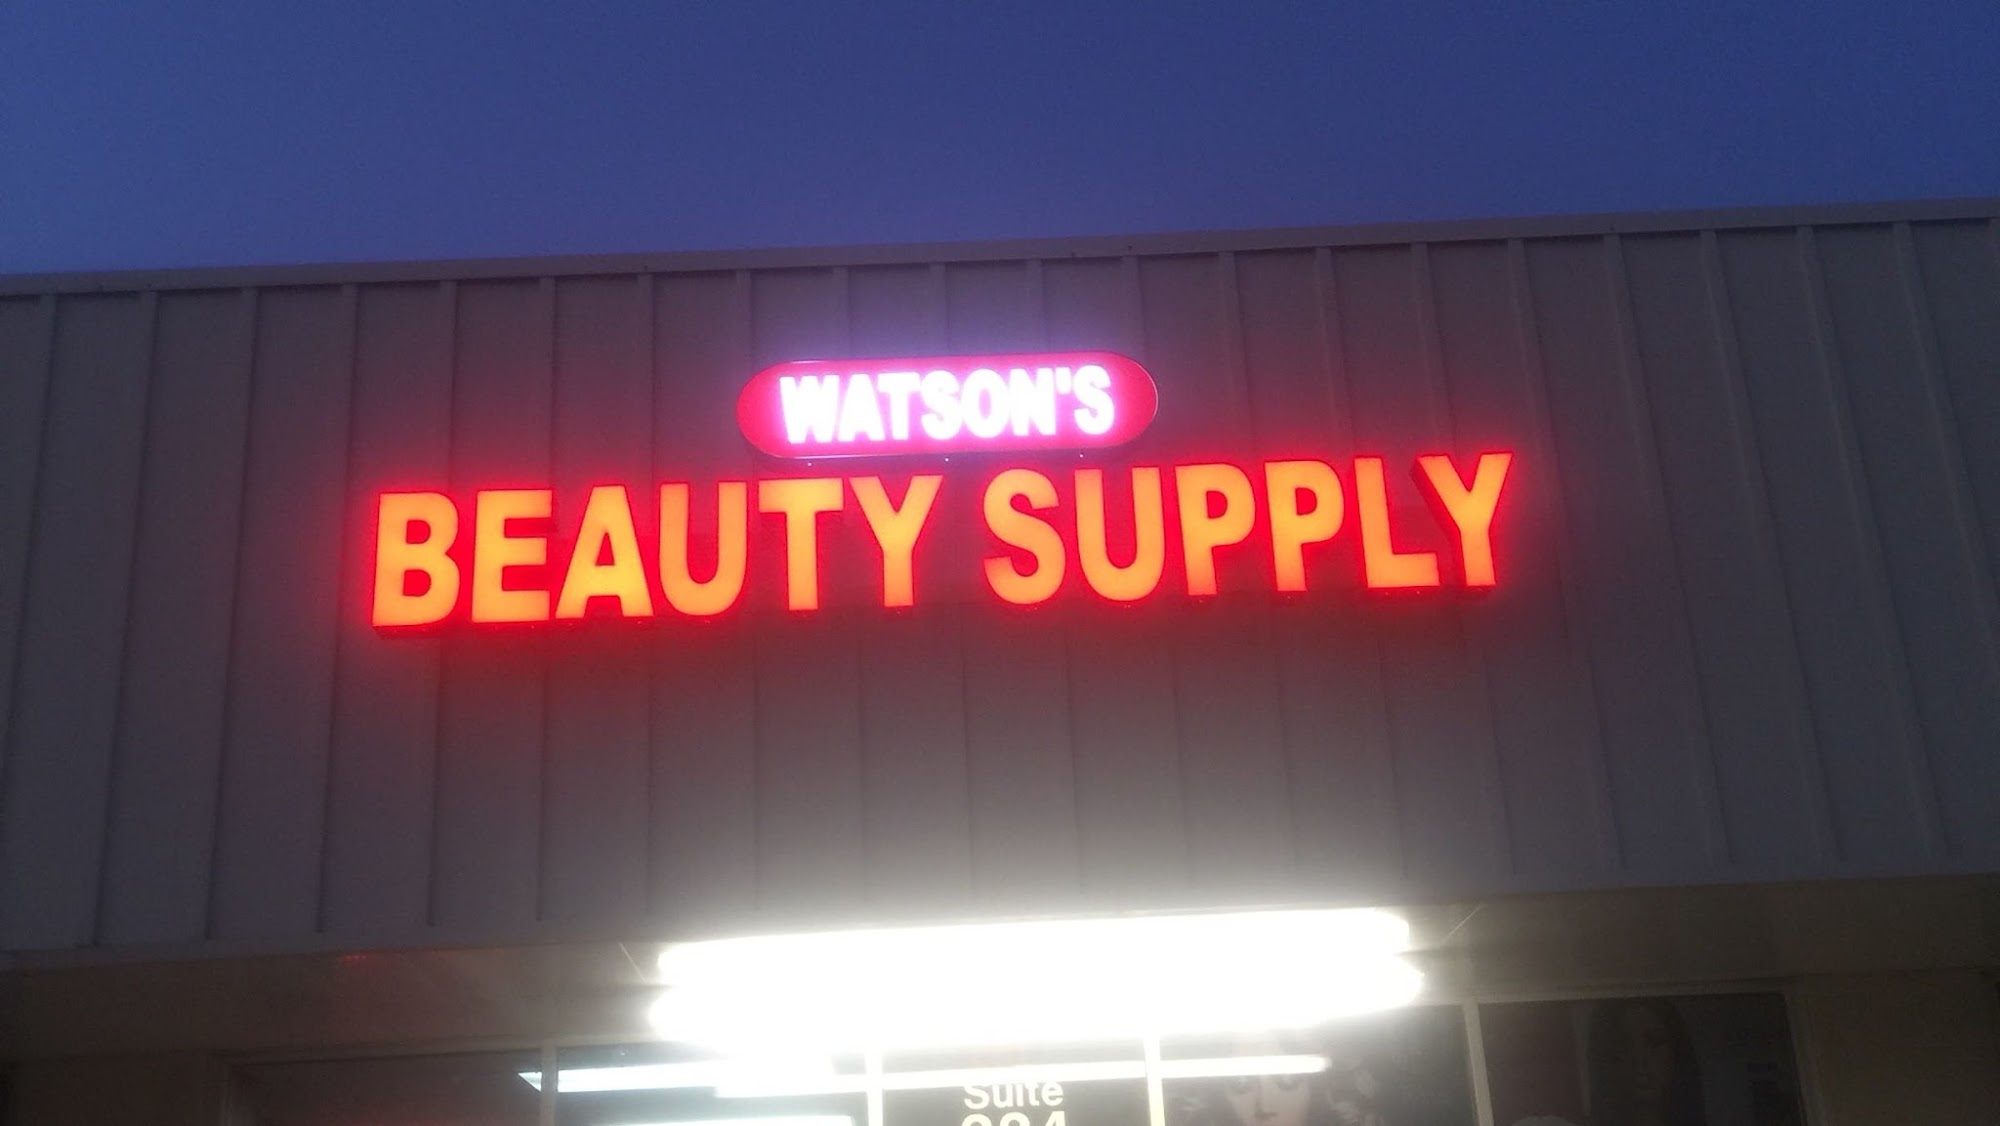 Watson's Beauty Supply